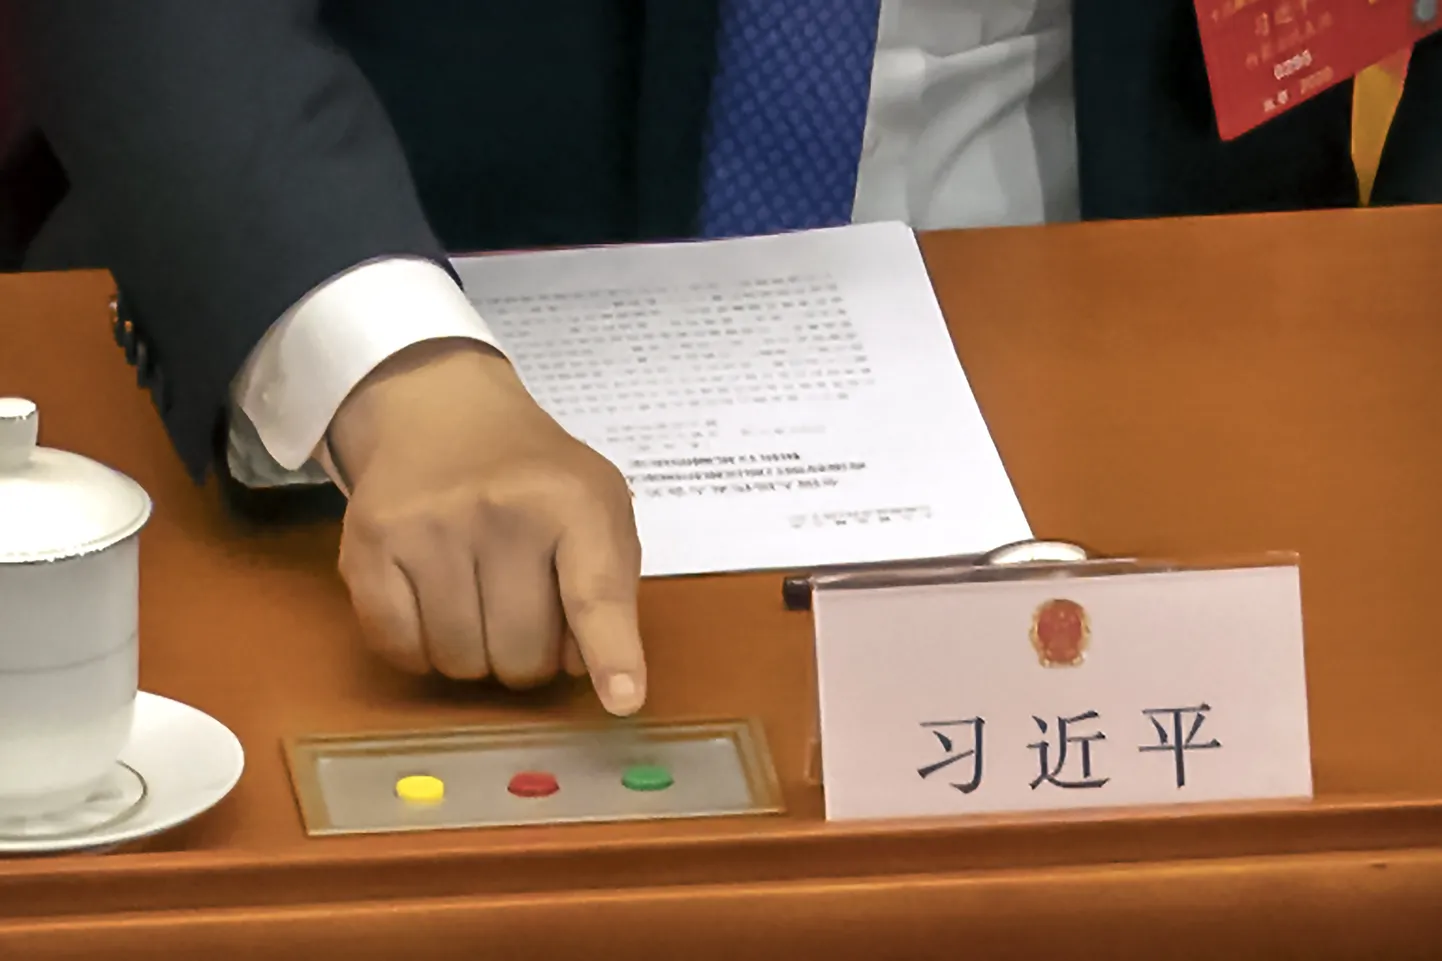 Hiina president Xi Jinping hääletab Hongkongi julgeolekuseaduse üle 28. mai 2020.